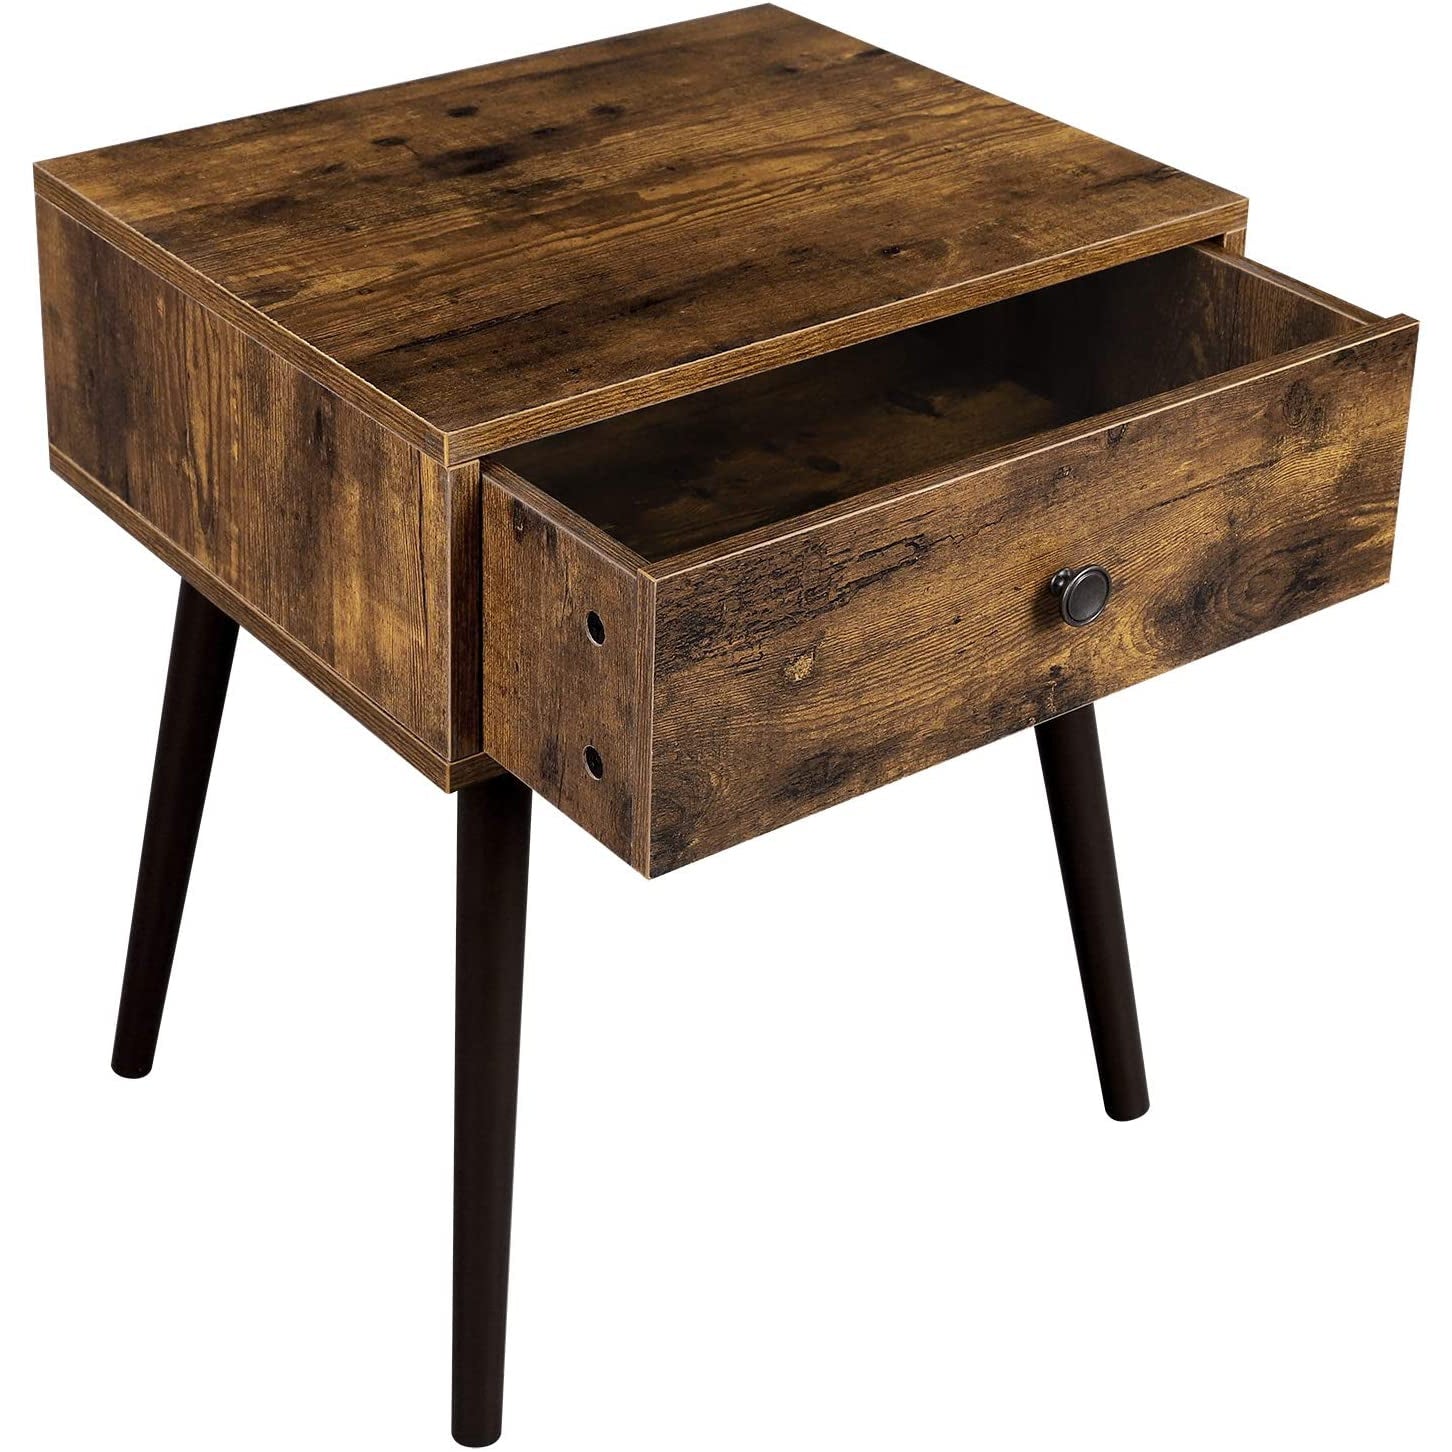 Table d'appoint Elko de Nancy - Table d'appoint - Table de chevet - Vintage - 40 x 48 x 55,5 cm